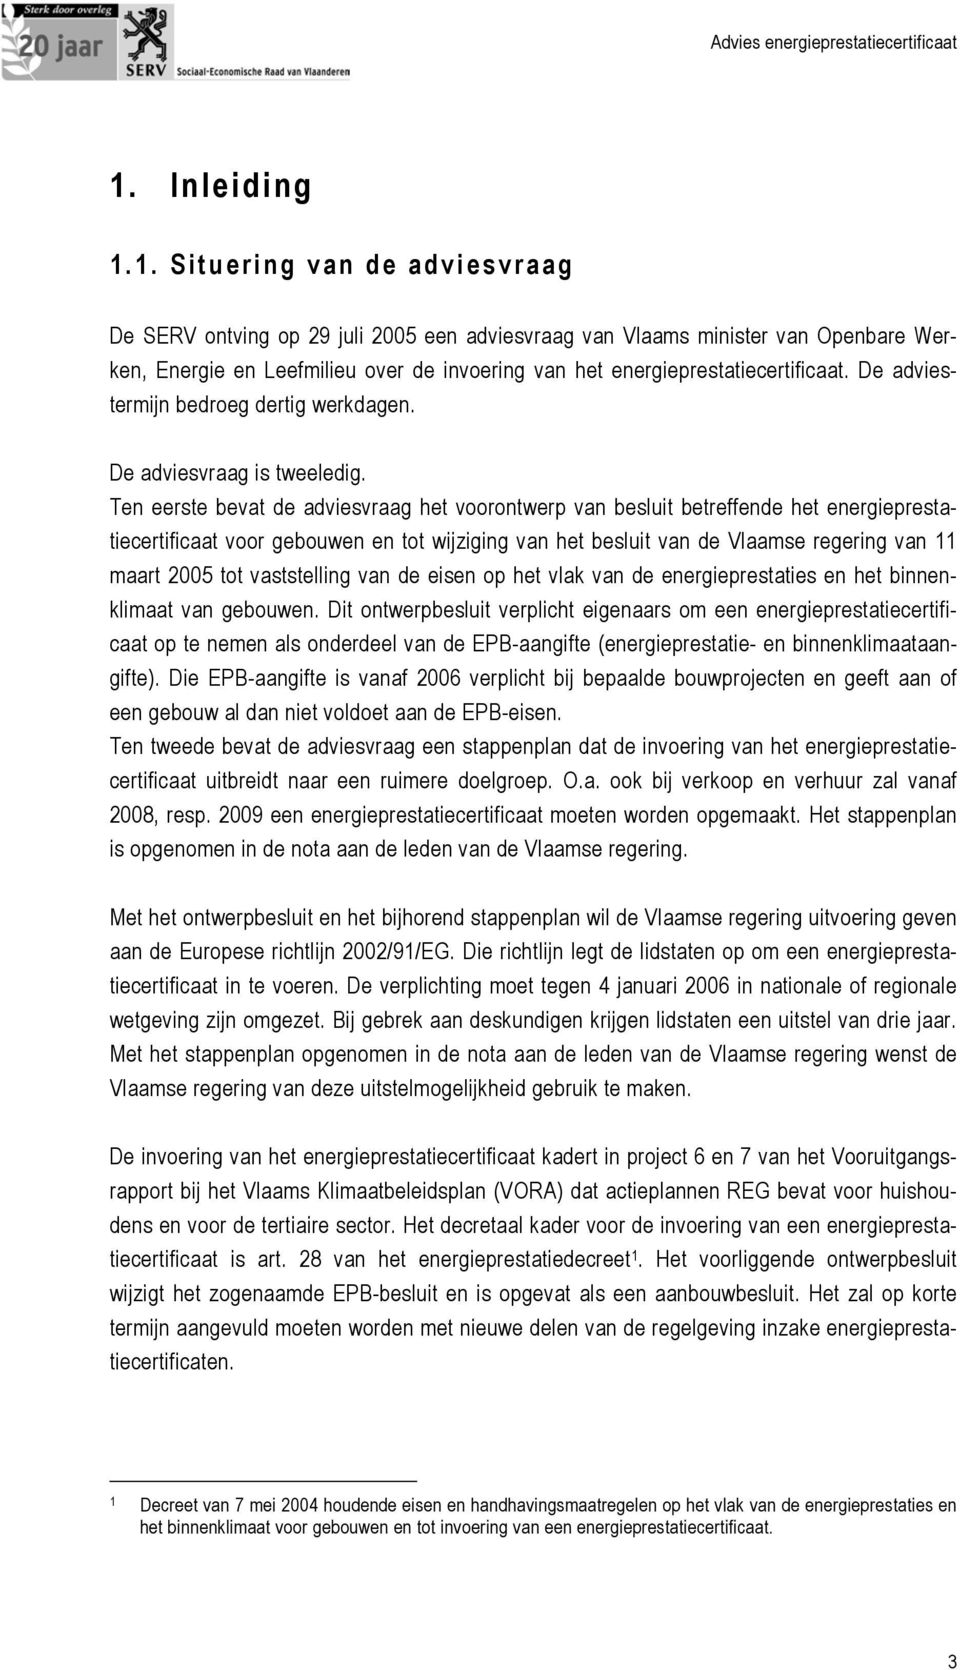 Ten eerste bevat de adviesvraag het voorontwerp van besluit betreffende het energieprestatiecertificaat voor gebouwen en tot wijziging van het besluit van de Vlaamse regering van 11 maart 2005 tot